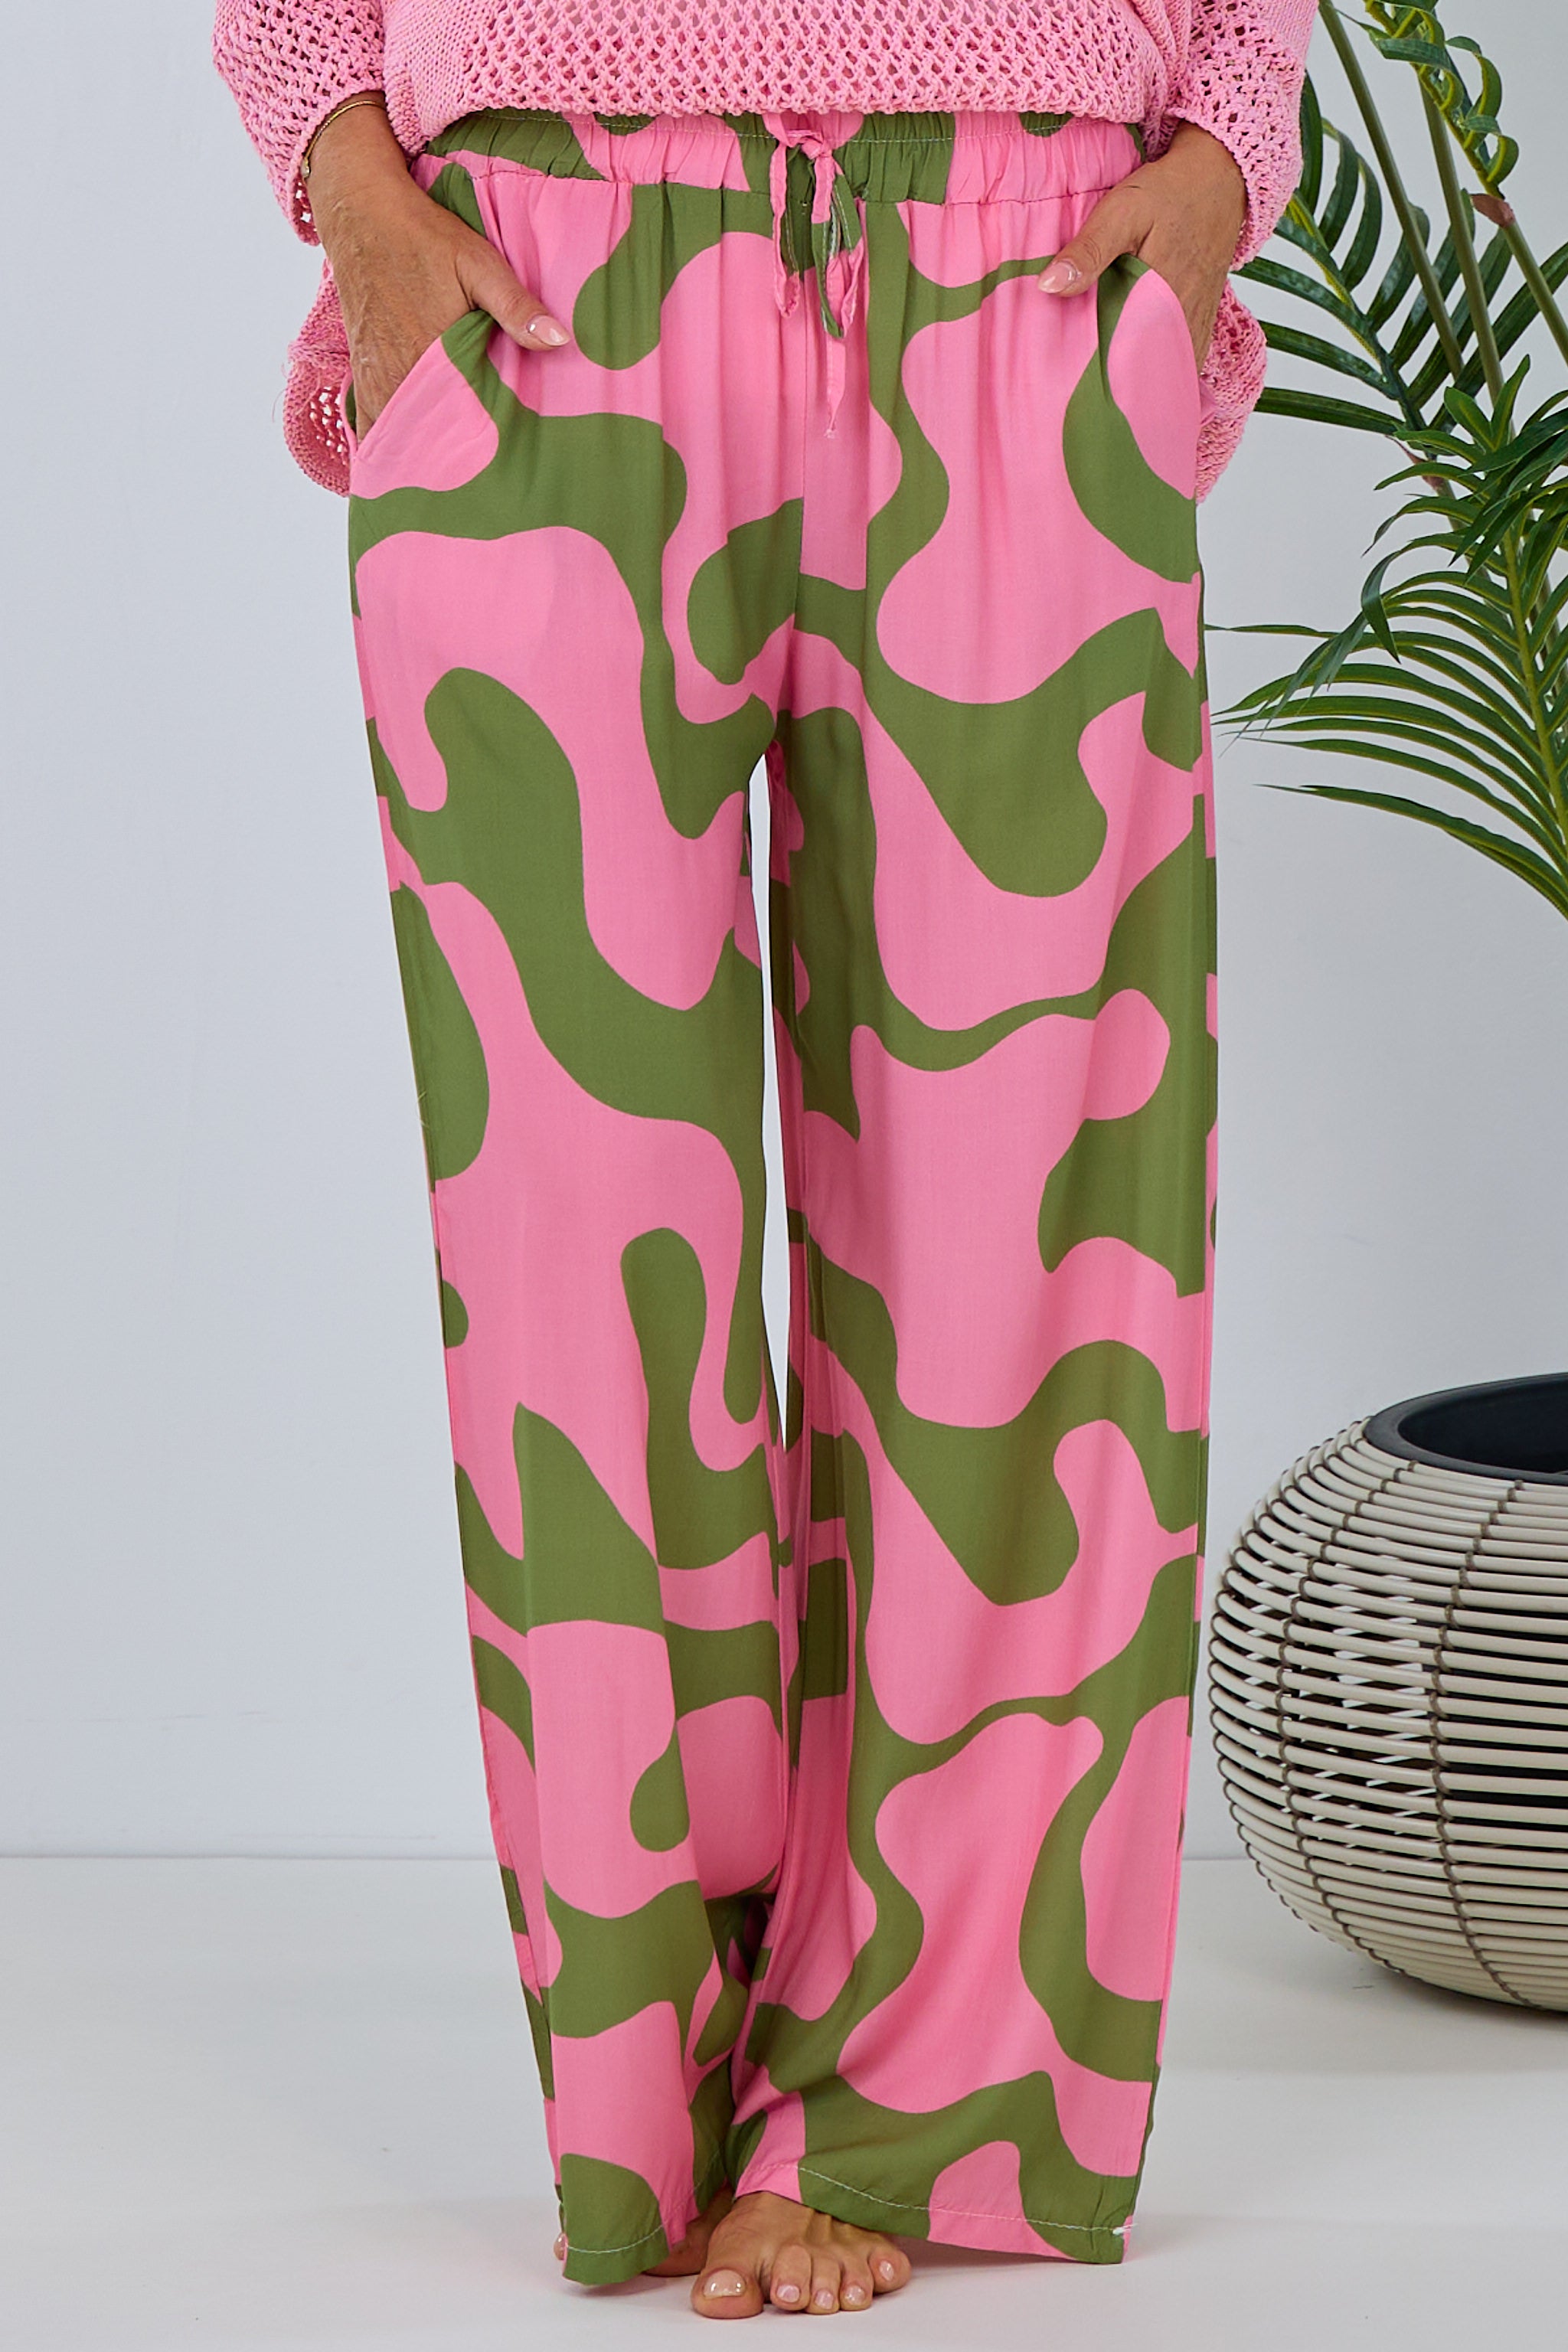 Damen moderne Hose mit Muster in rosa-grün von Trends & Lifestyle